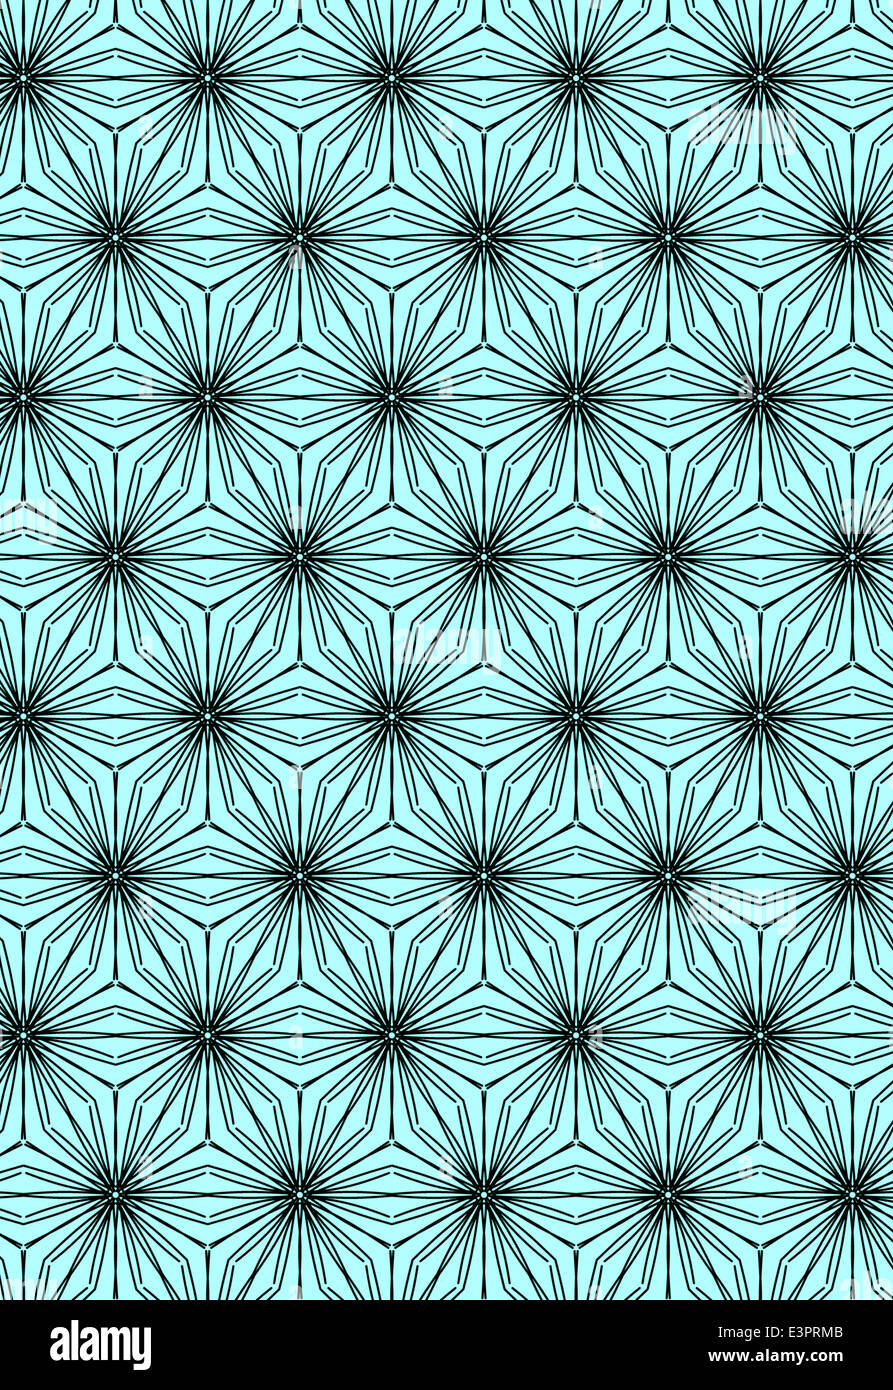 Illustration du papier peint à motifs symétriques Banque D'Images